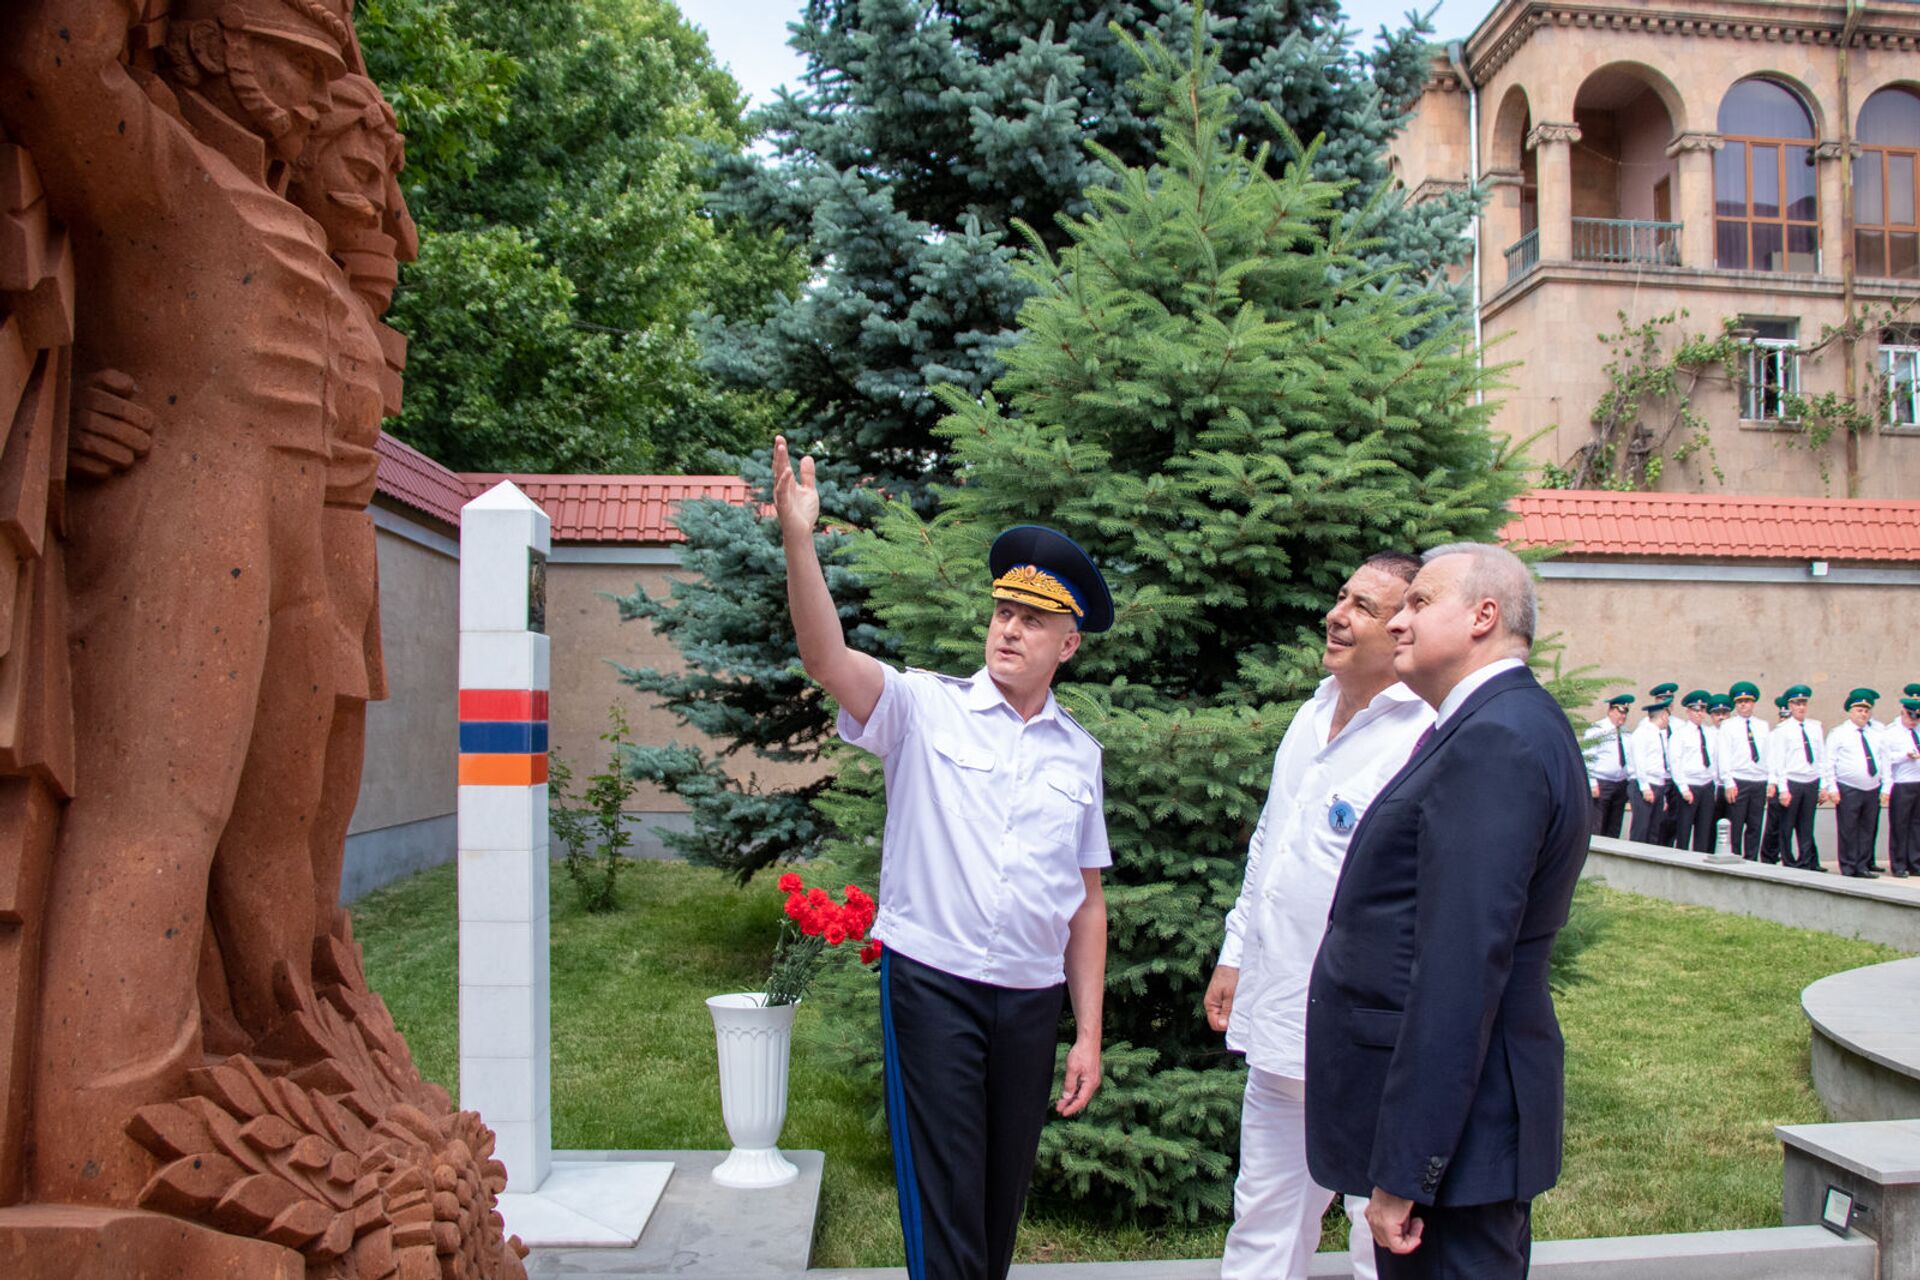 Երևանում բացվեց հայ-ռուսական բարեկամության հուշարձան - Sputnik Արմենիա, 1920, 28.05.2021